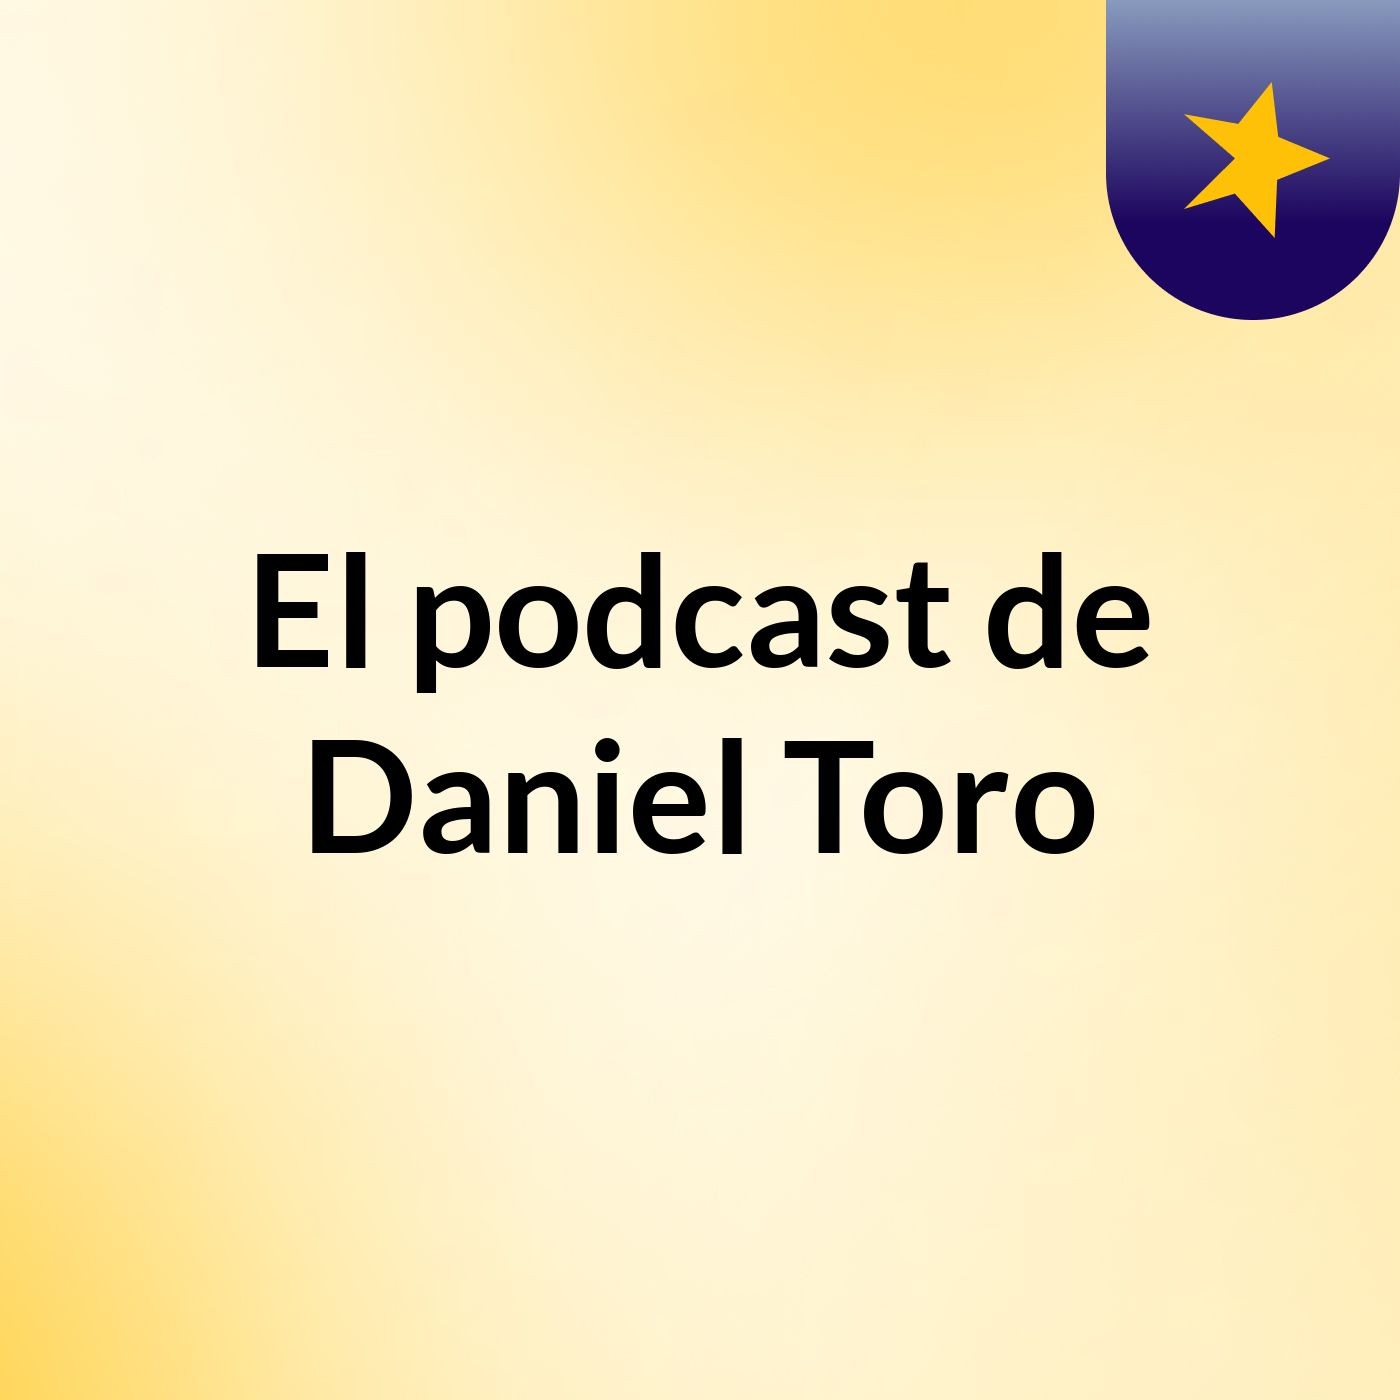 El podcast de Daniel Toro